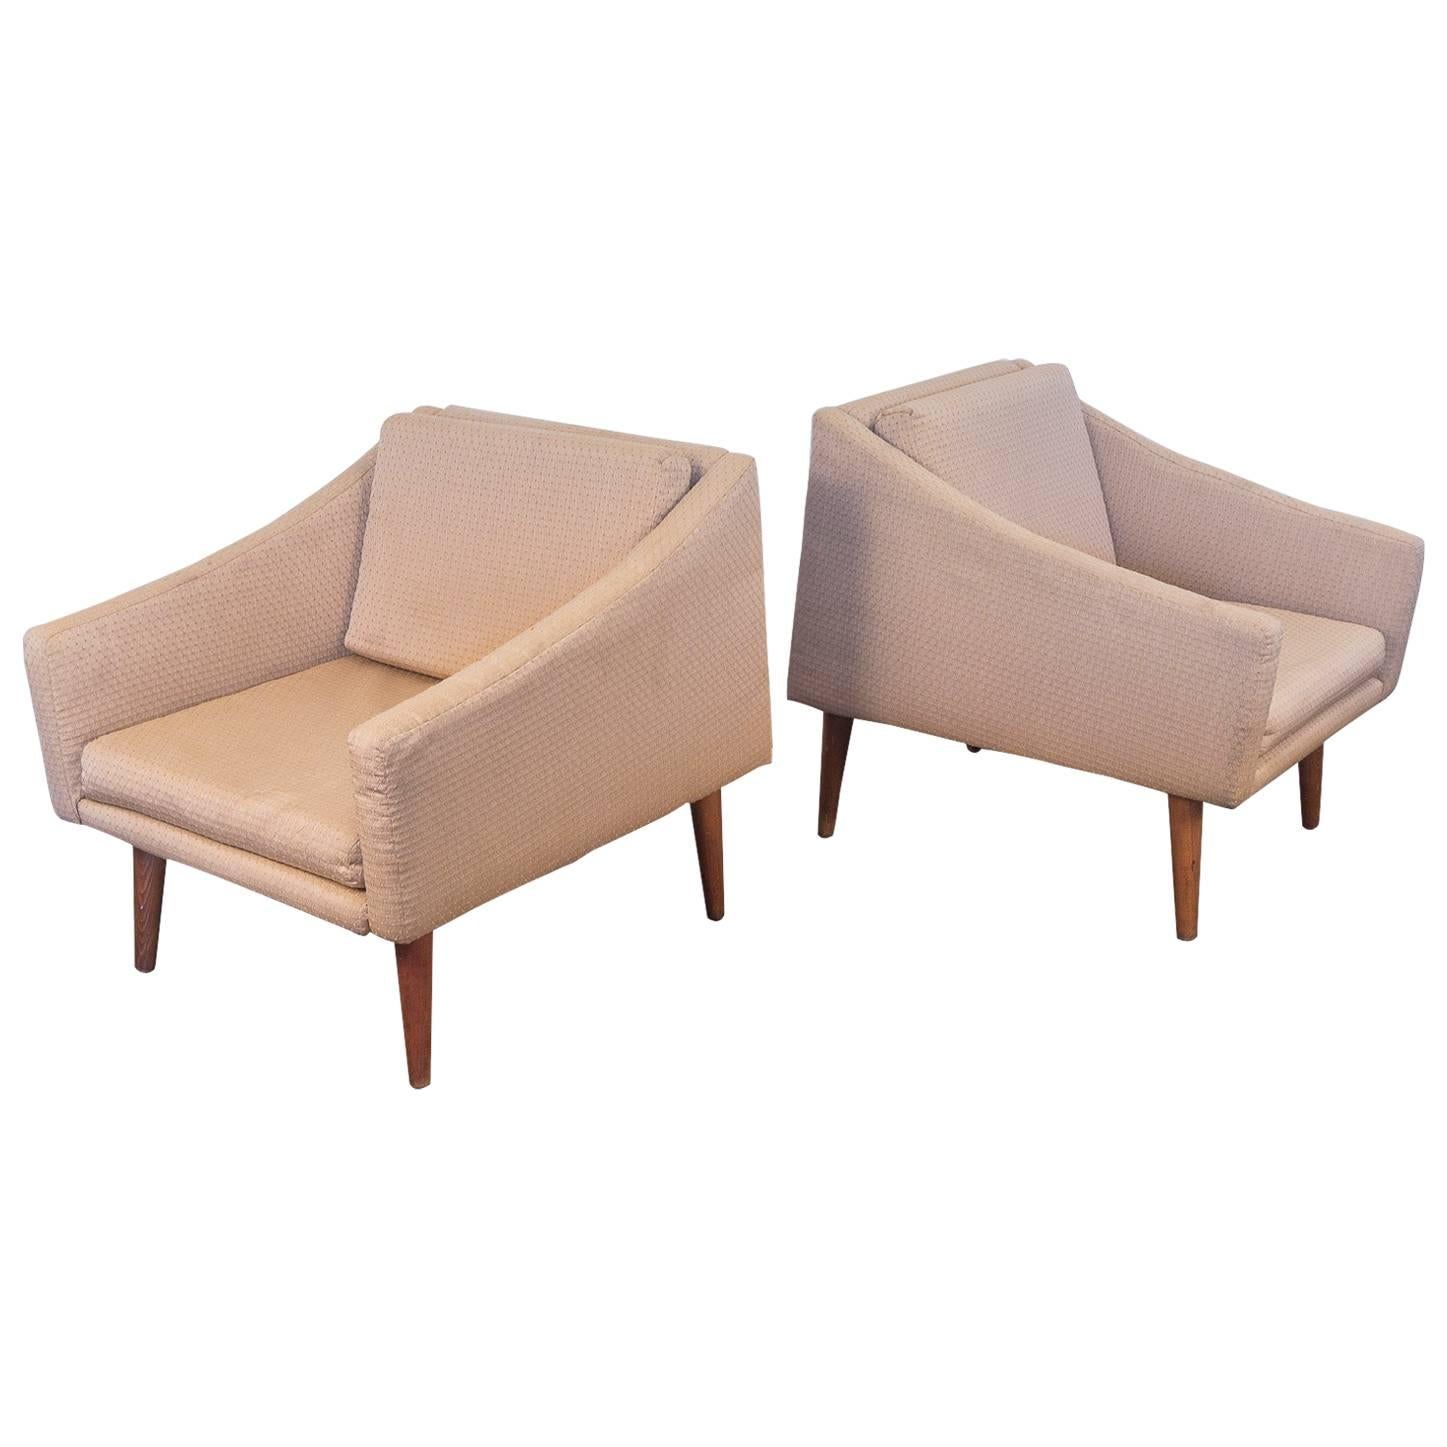 Pair of Modern Club Chairs